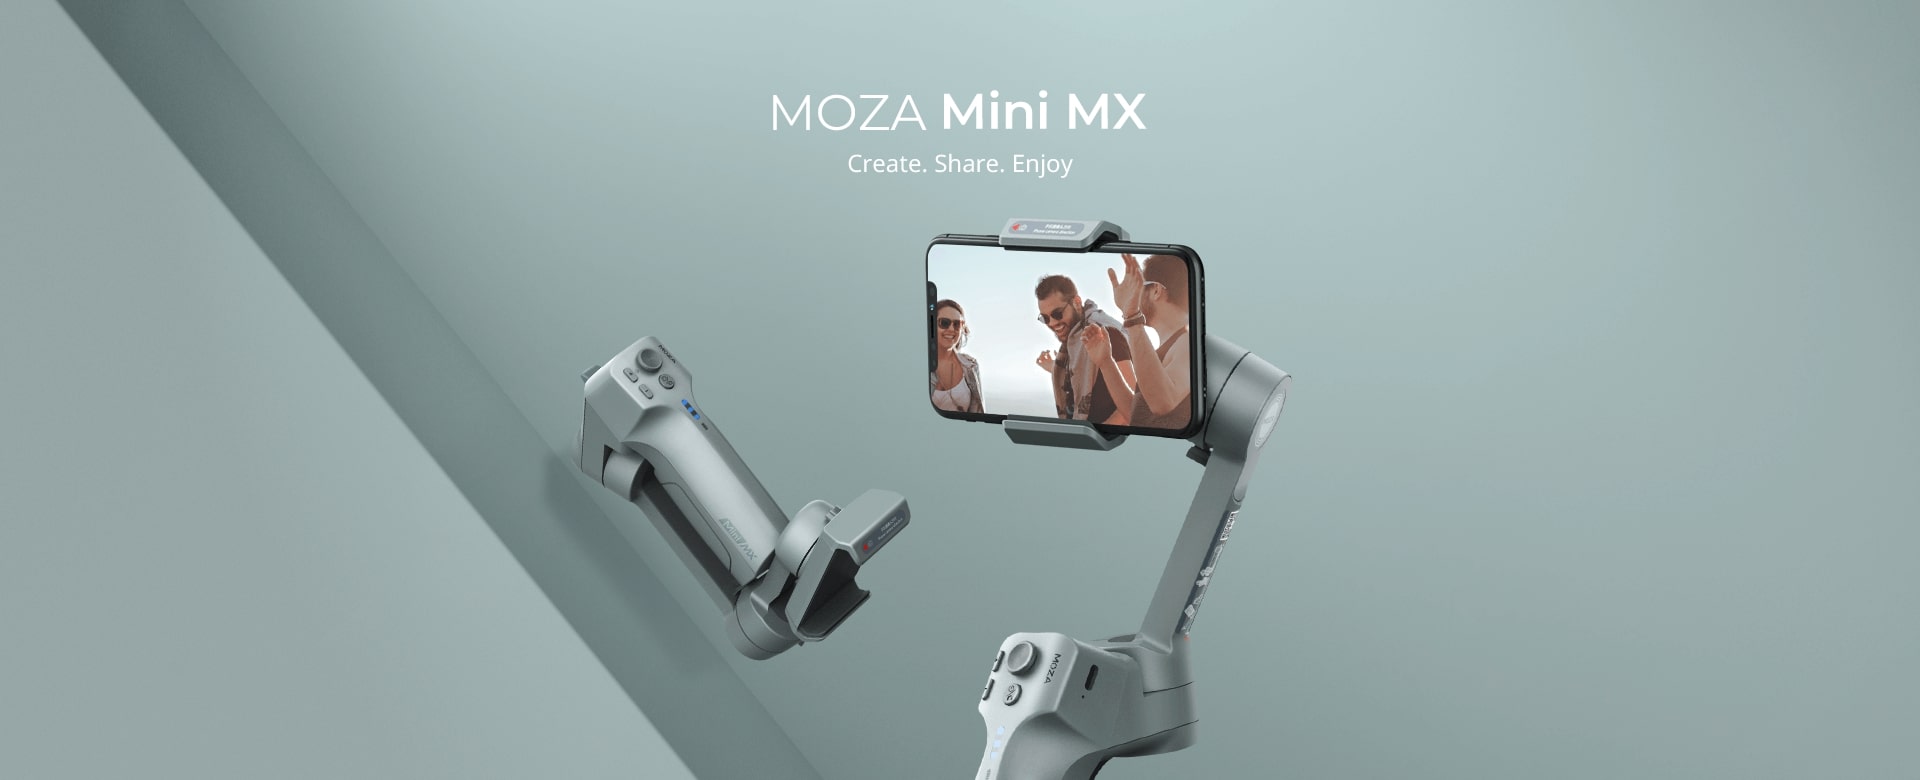 MOZA Mini MX